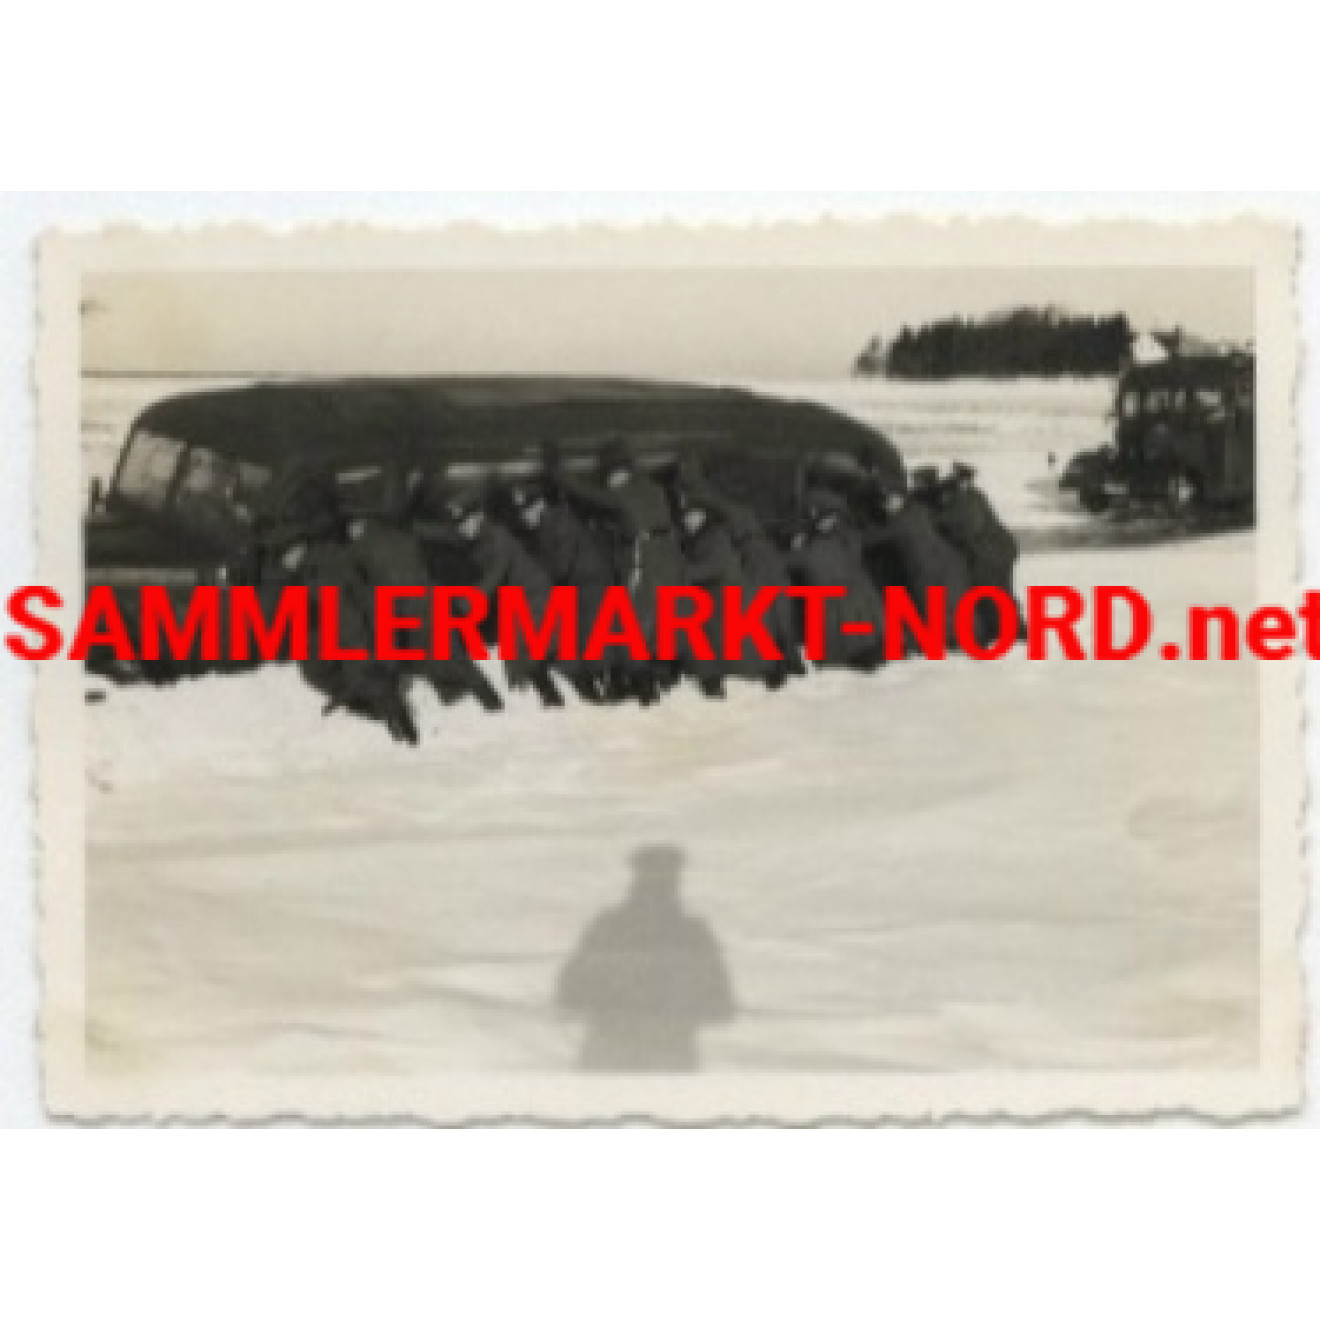 Wehrmacht bus in deep snow